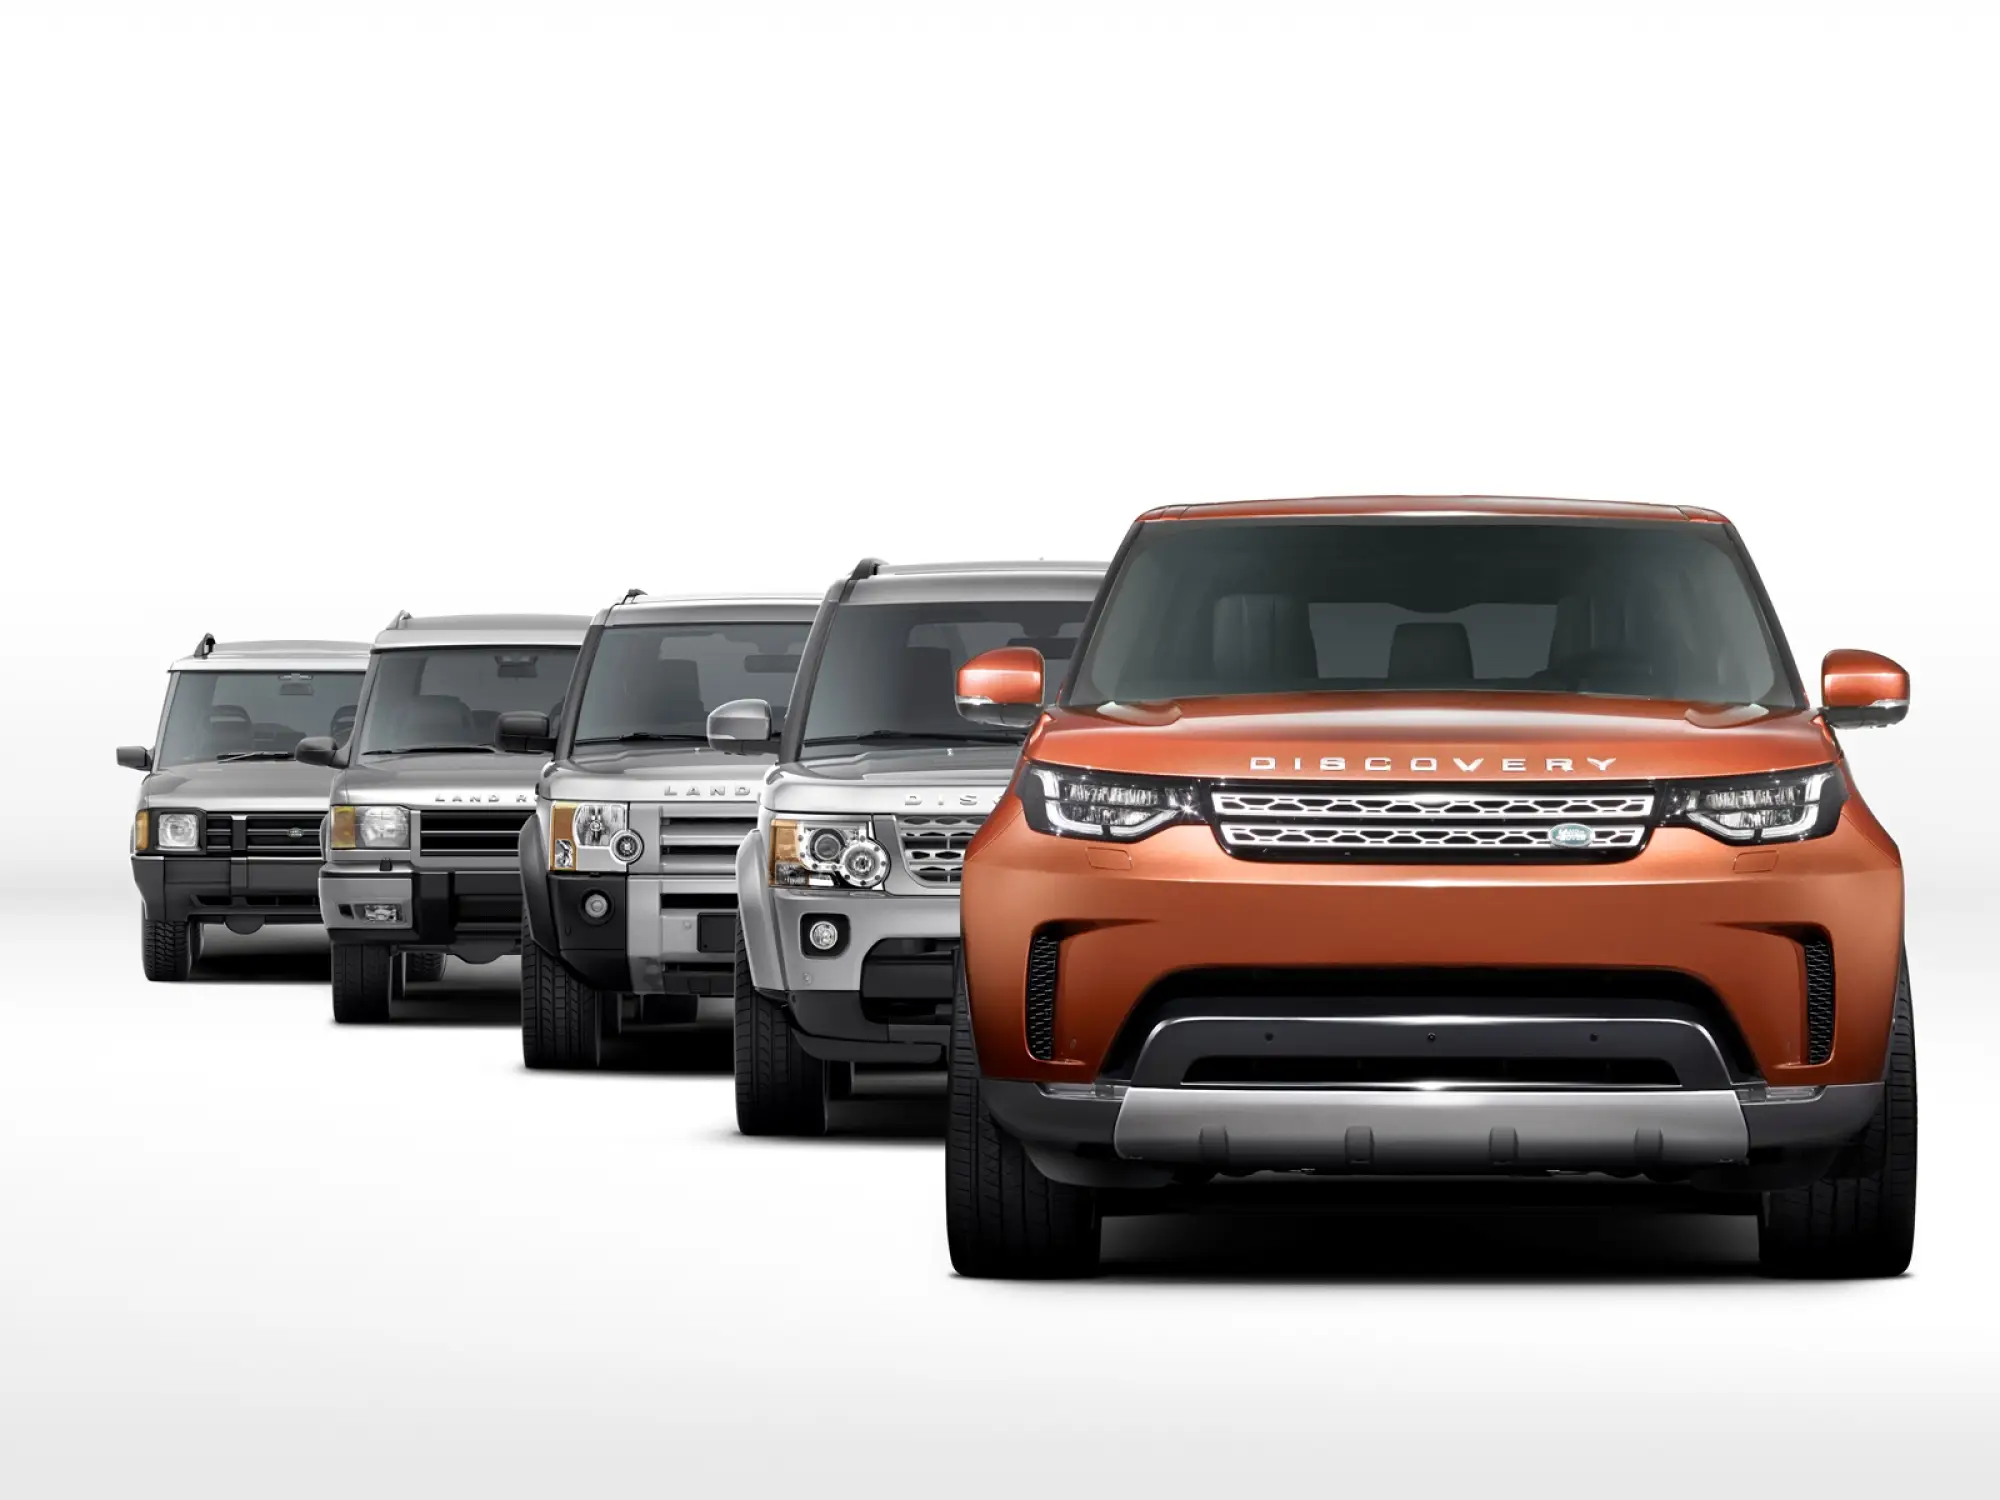 Nuova Land Rover Discovery prime foto ufficiali 6 settembre 2016 - 1